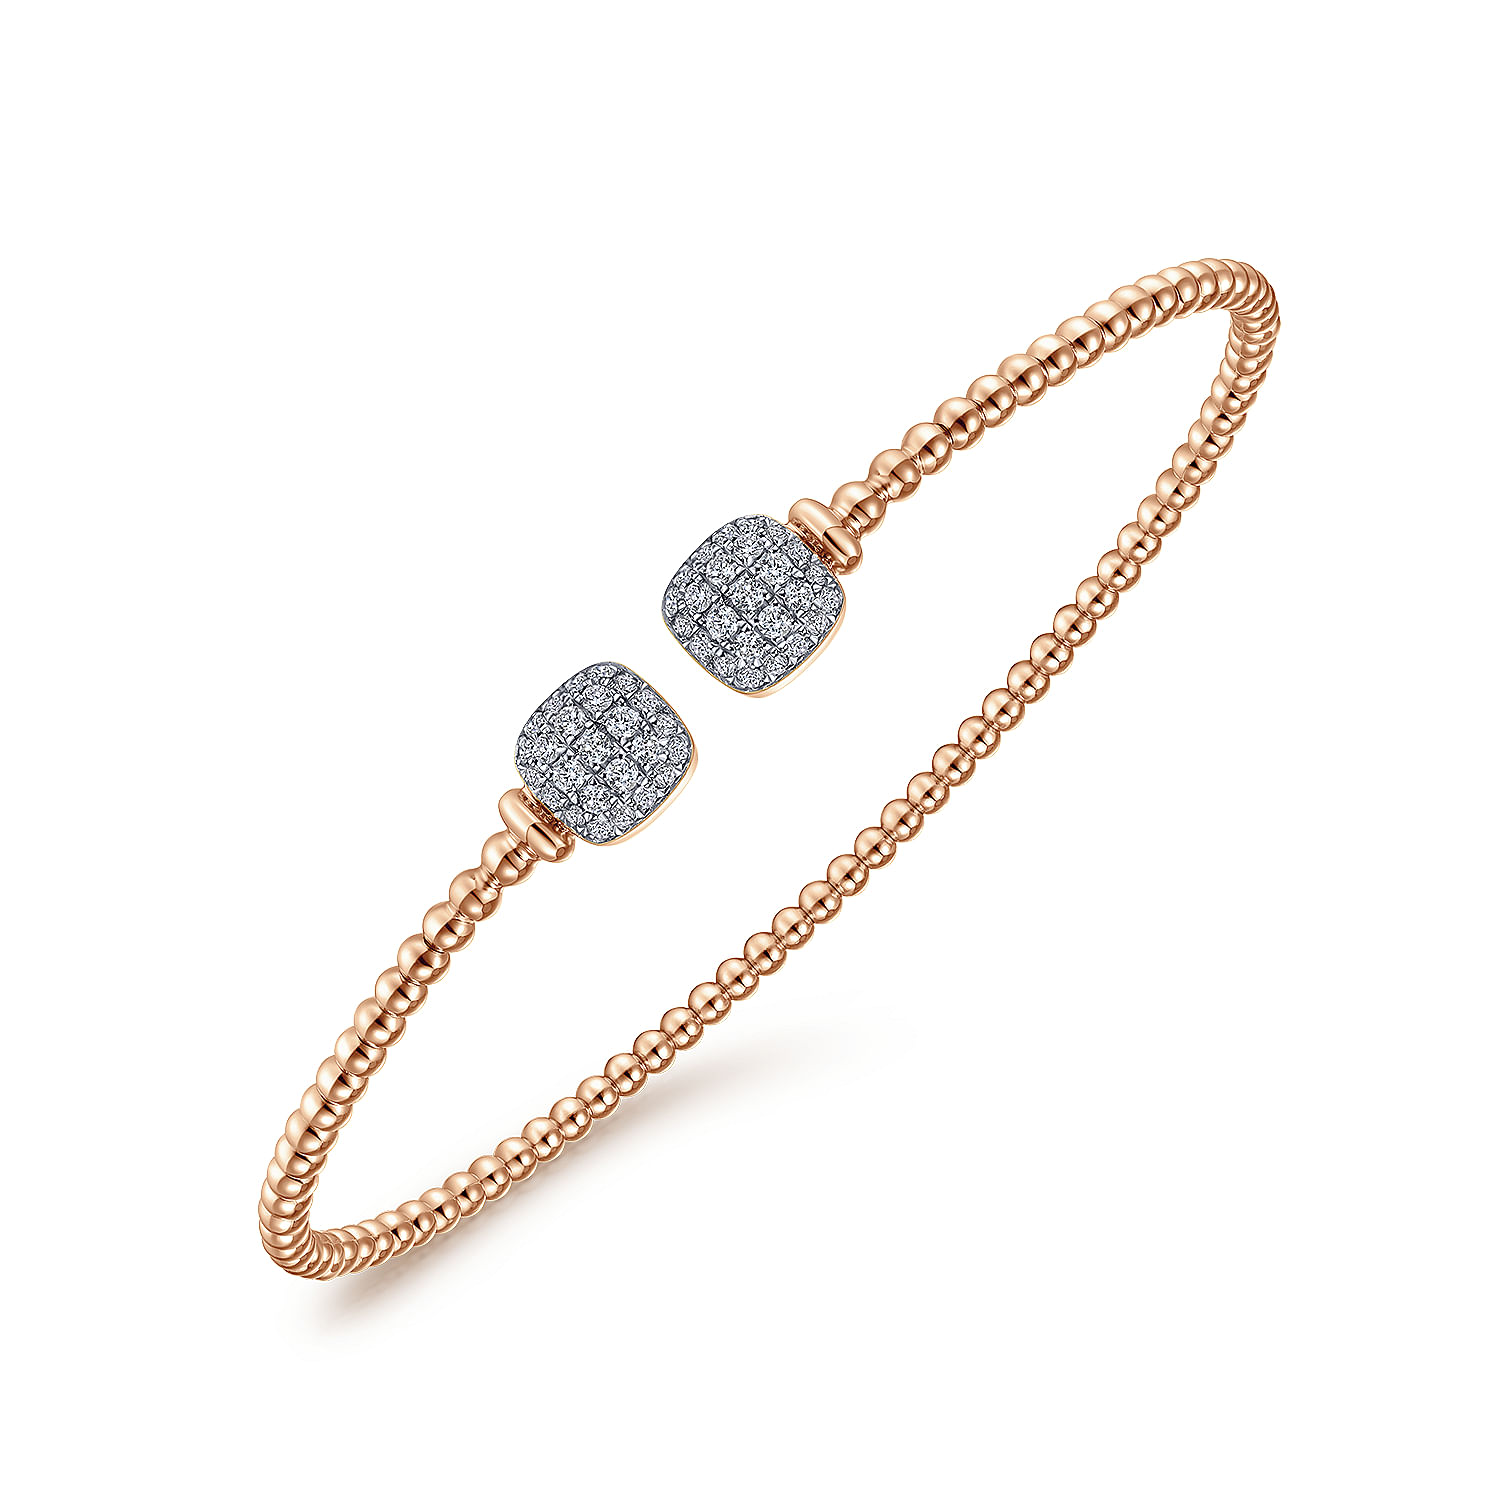 14K Rose Gold Bujukan Split Cuff Bracelet with Pav¿ª Diamond Squares - 0.3 ct - Shot 2